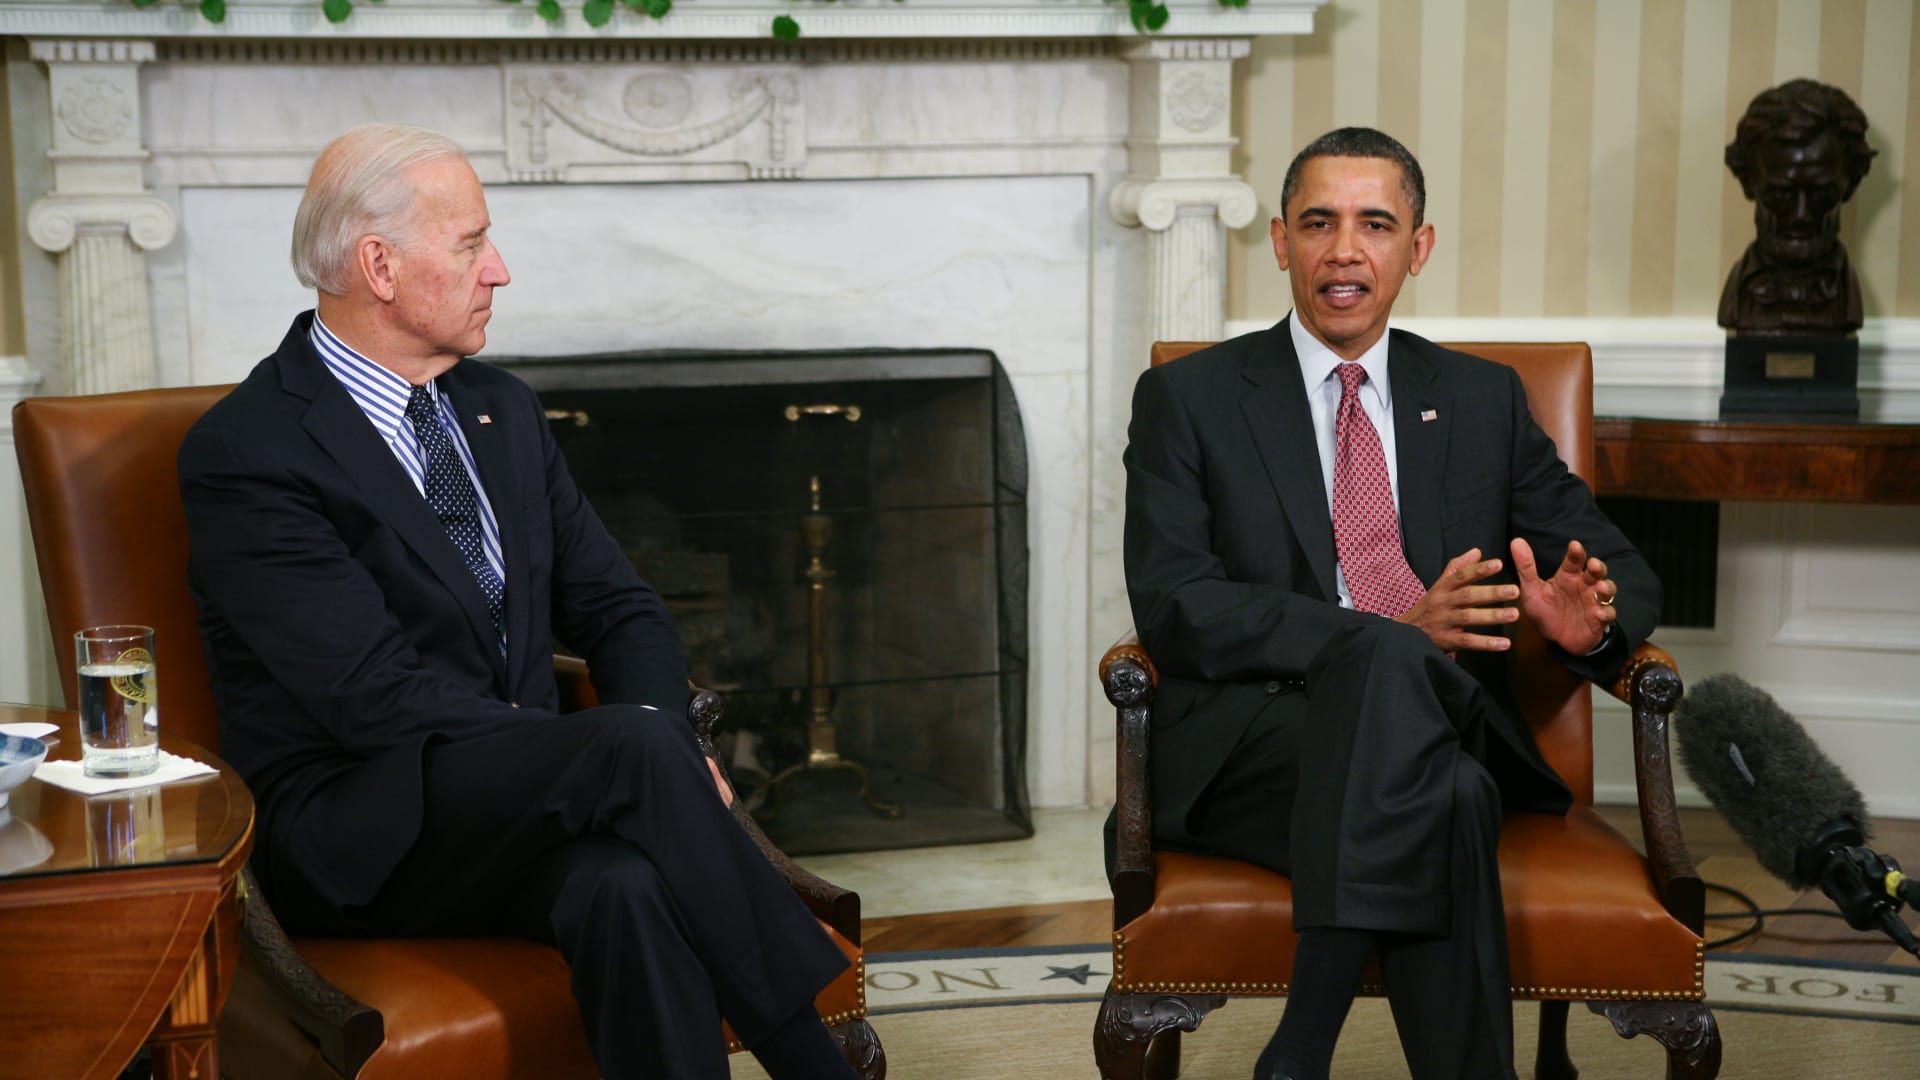 صورة أرشيفية تجمع الرئيس الأمريكي الأسبق باراك أوباما ونائبه جو بايدن في البيت الأبيض